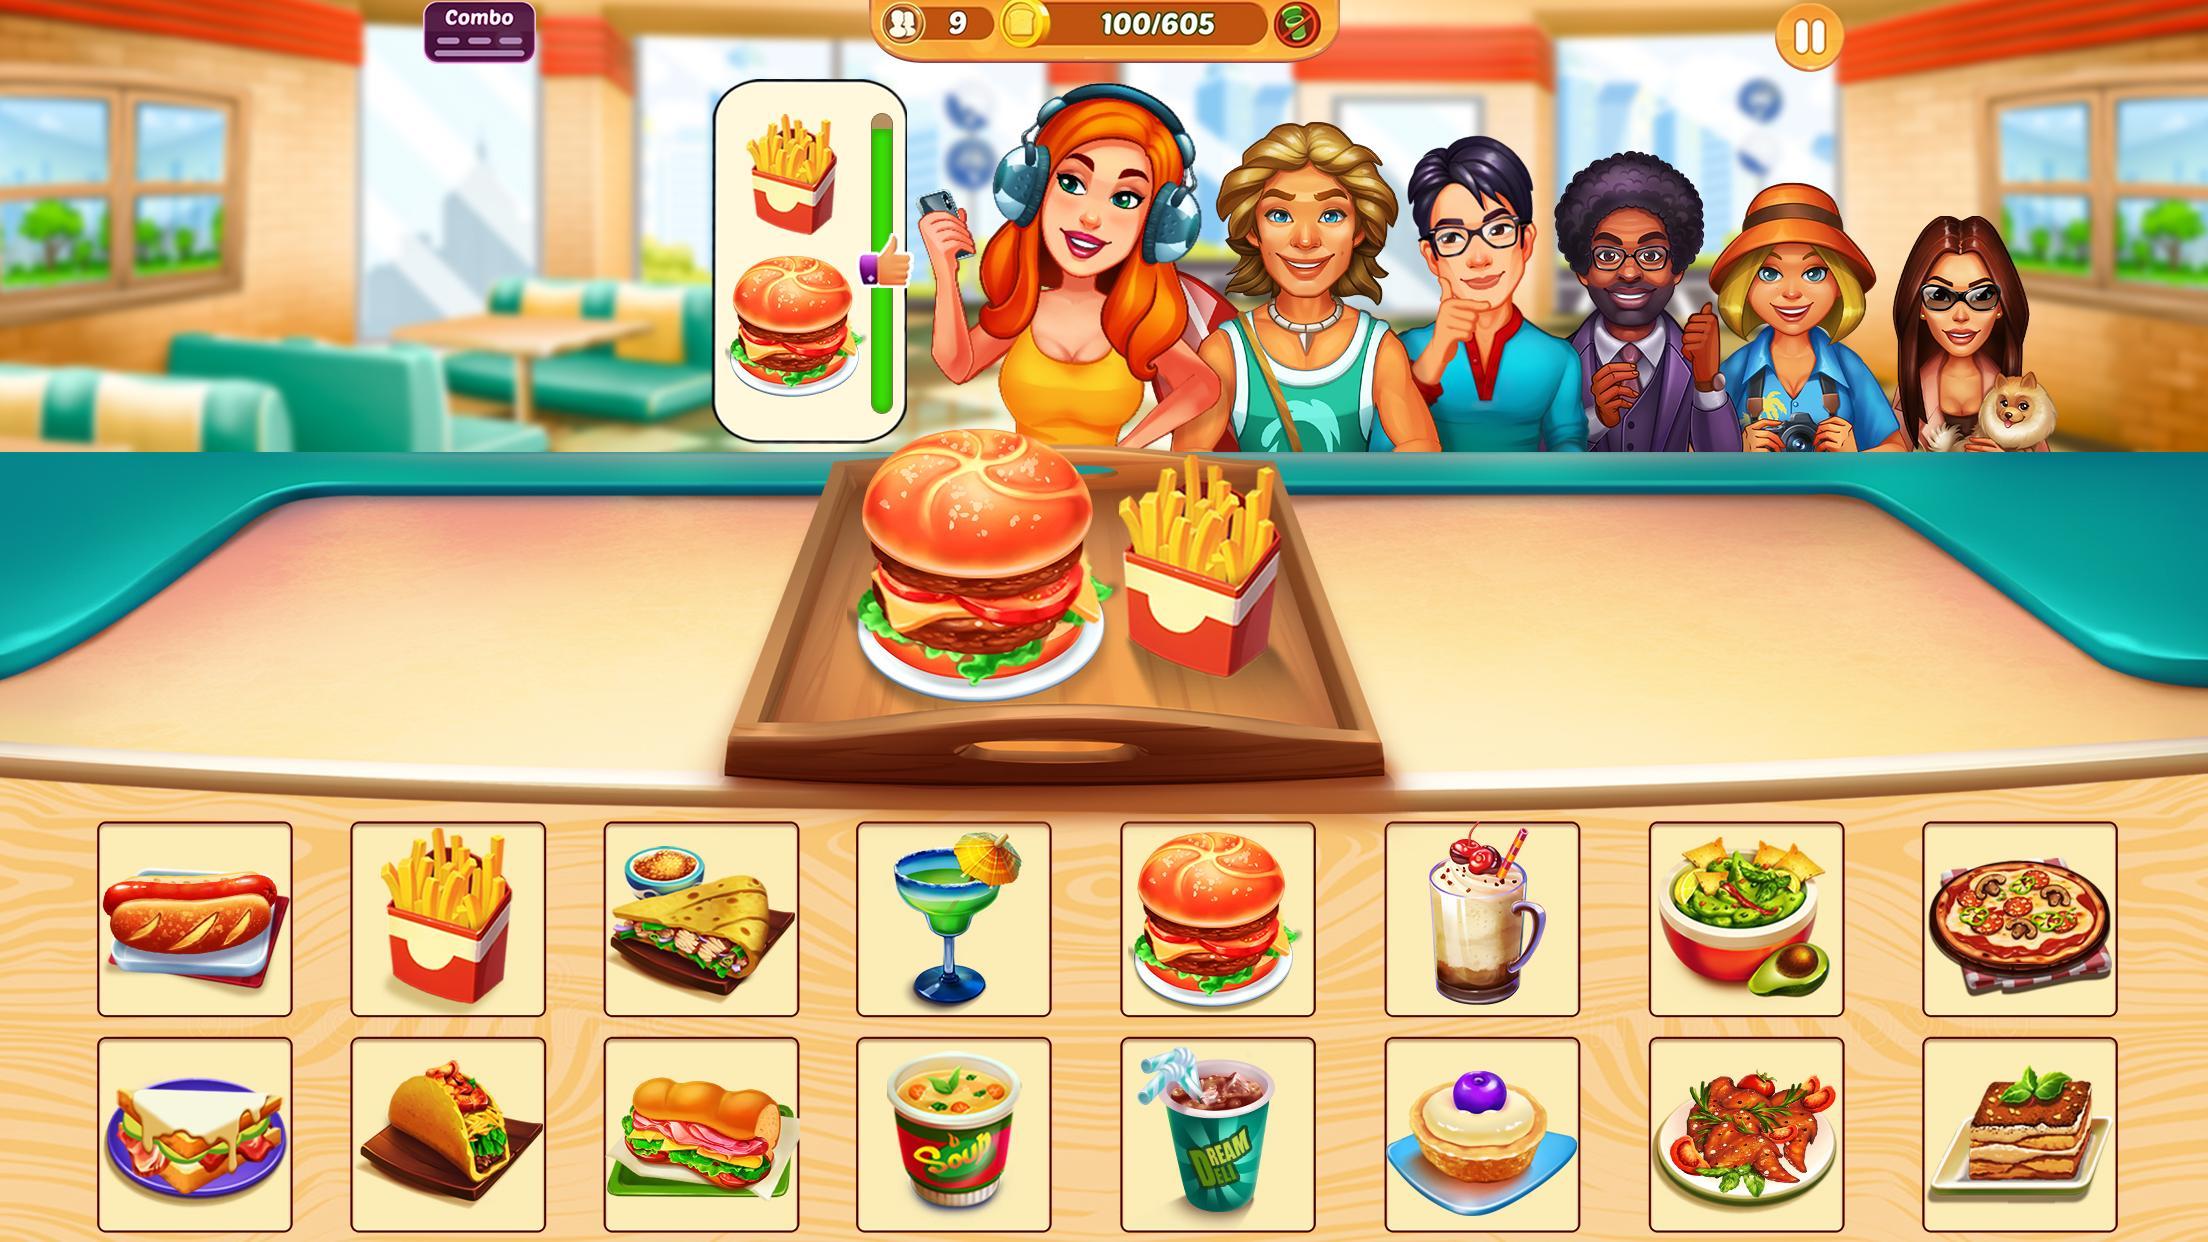 Screenshot 1 of Cook It - Game Restoran 1.3.6